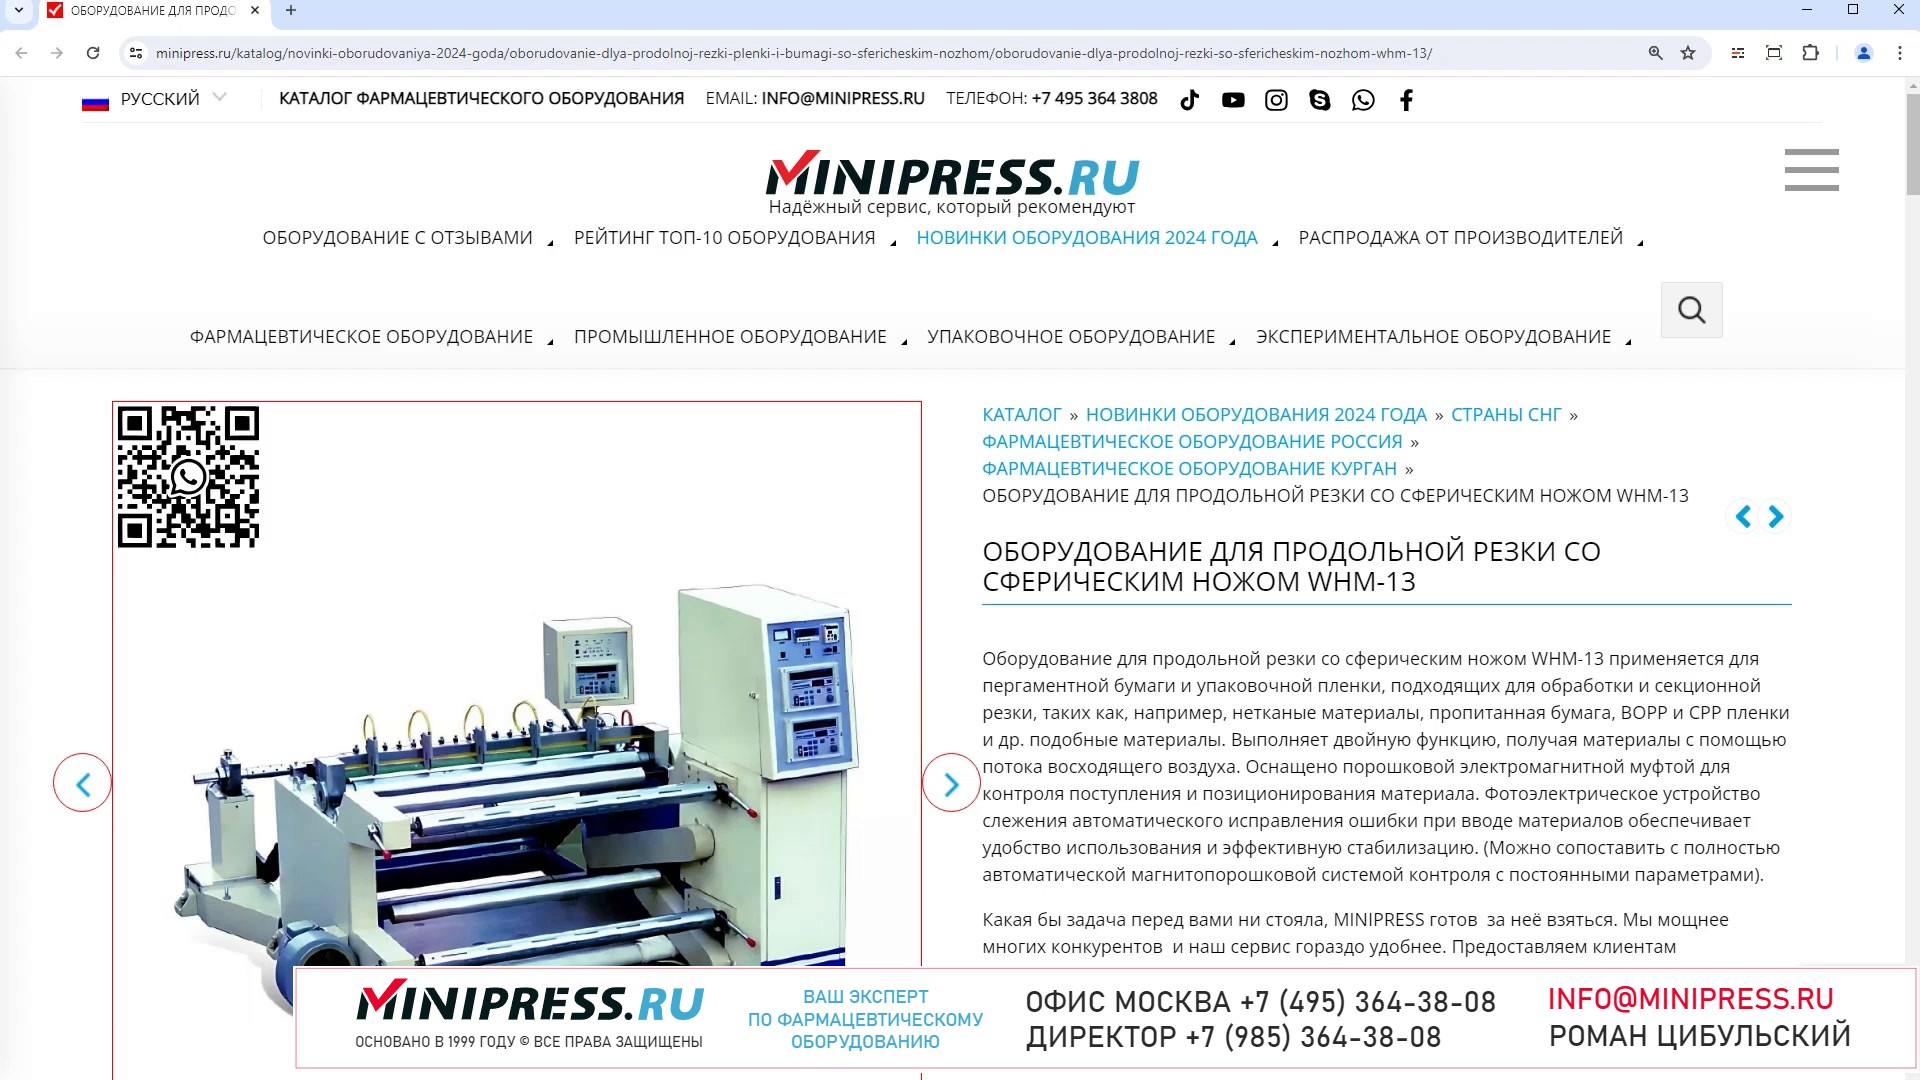 Minipress.ru Оборудование для продольной резки со сферическим ножом WHM-13